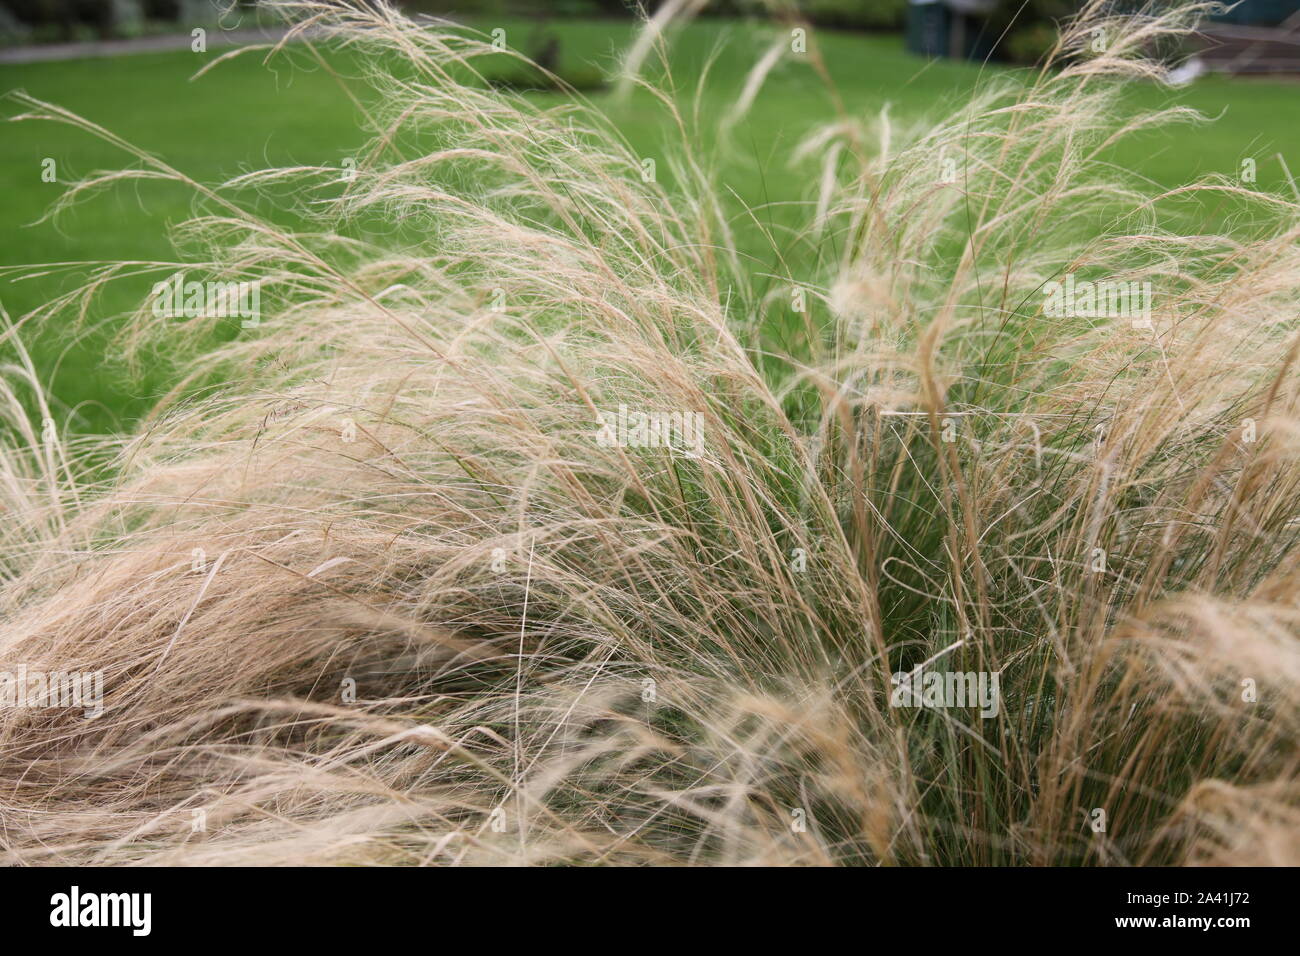 Feder Gras, Pferdeschwanz, weht im Wind in einem Garten in tagsüber Sonnenschein Stockfoto